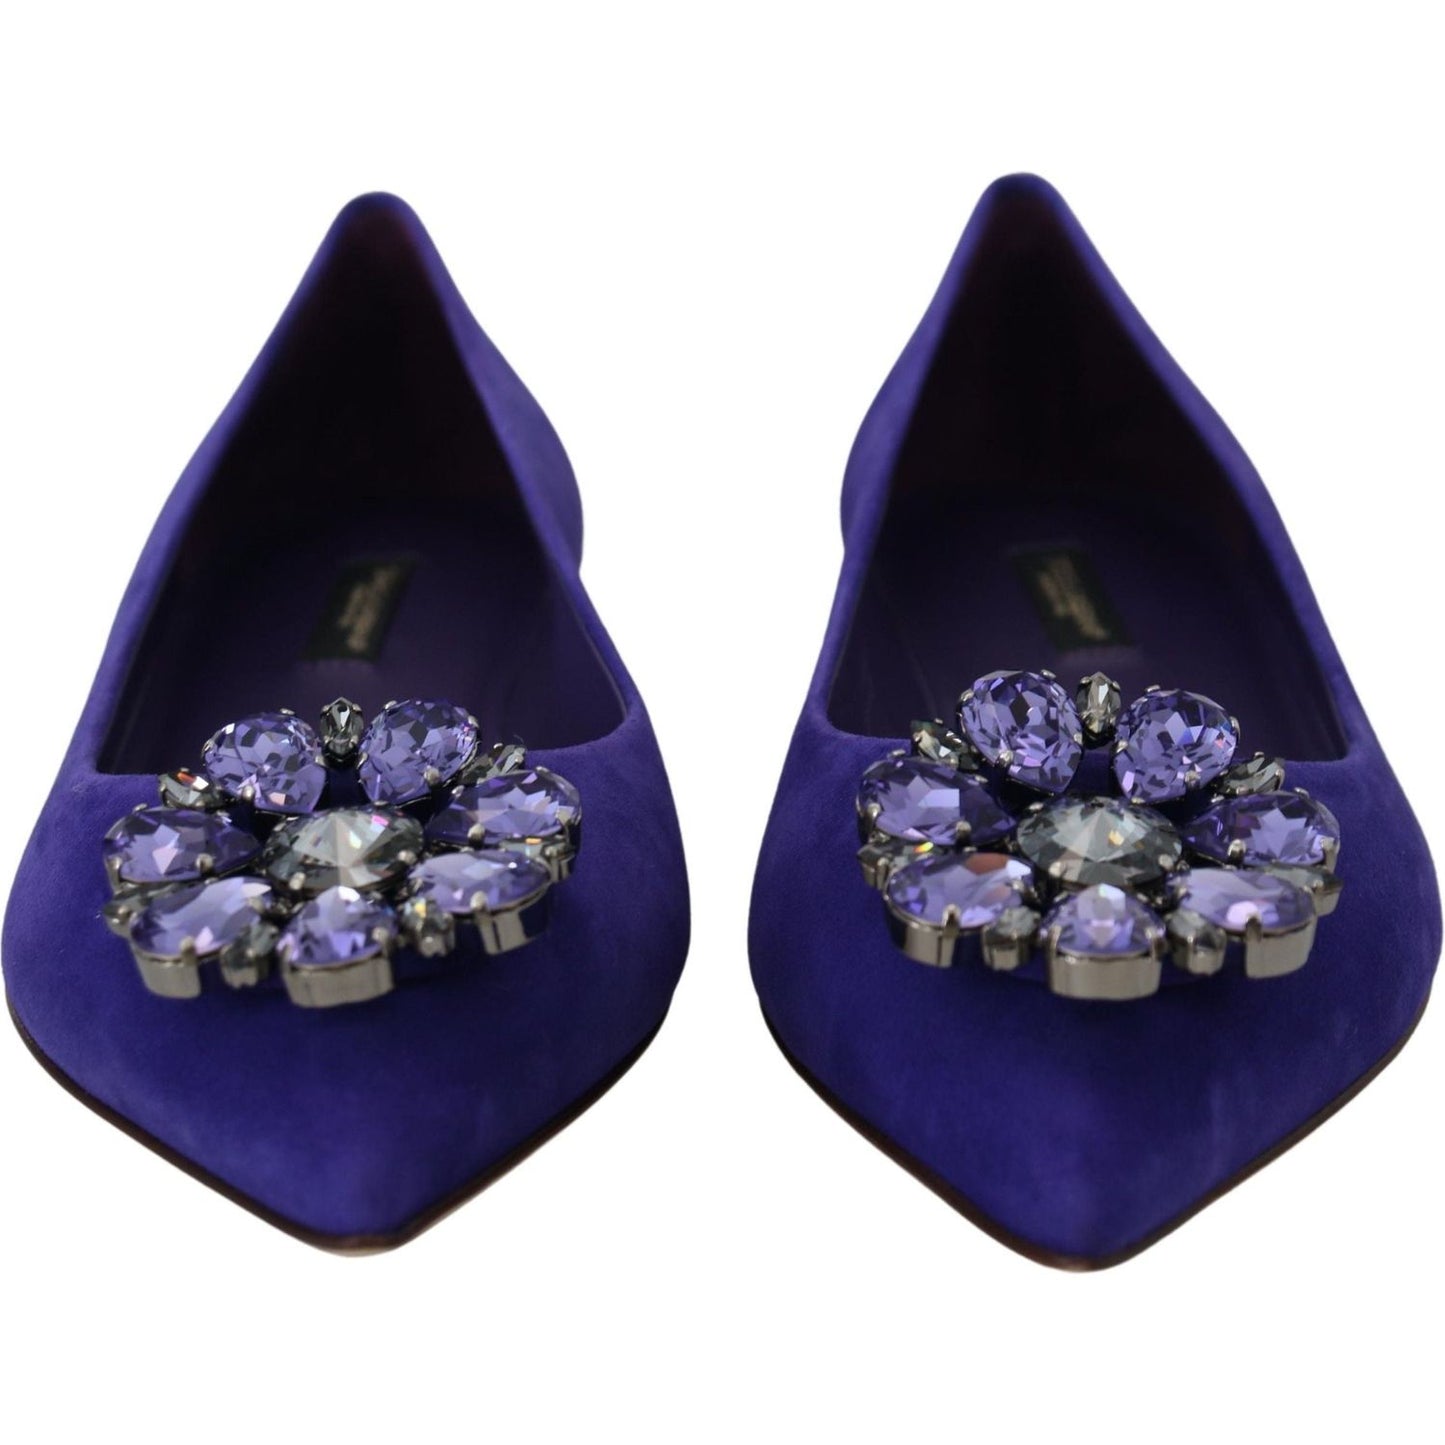 Dolce & Gabbana Embellished Crystal Purple Suede Flats purple-suede-crystals-loafers-flats-shoes